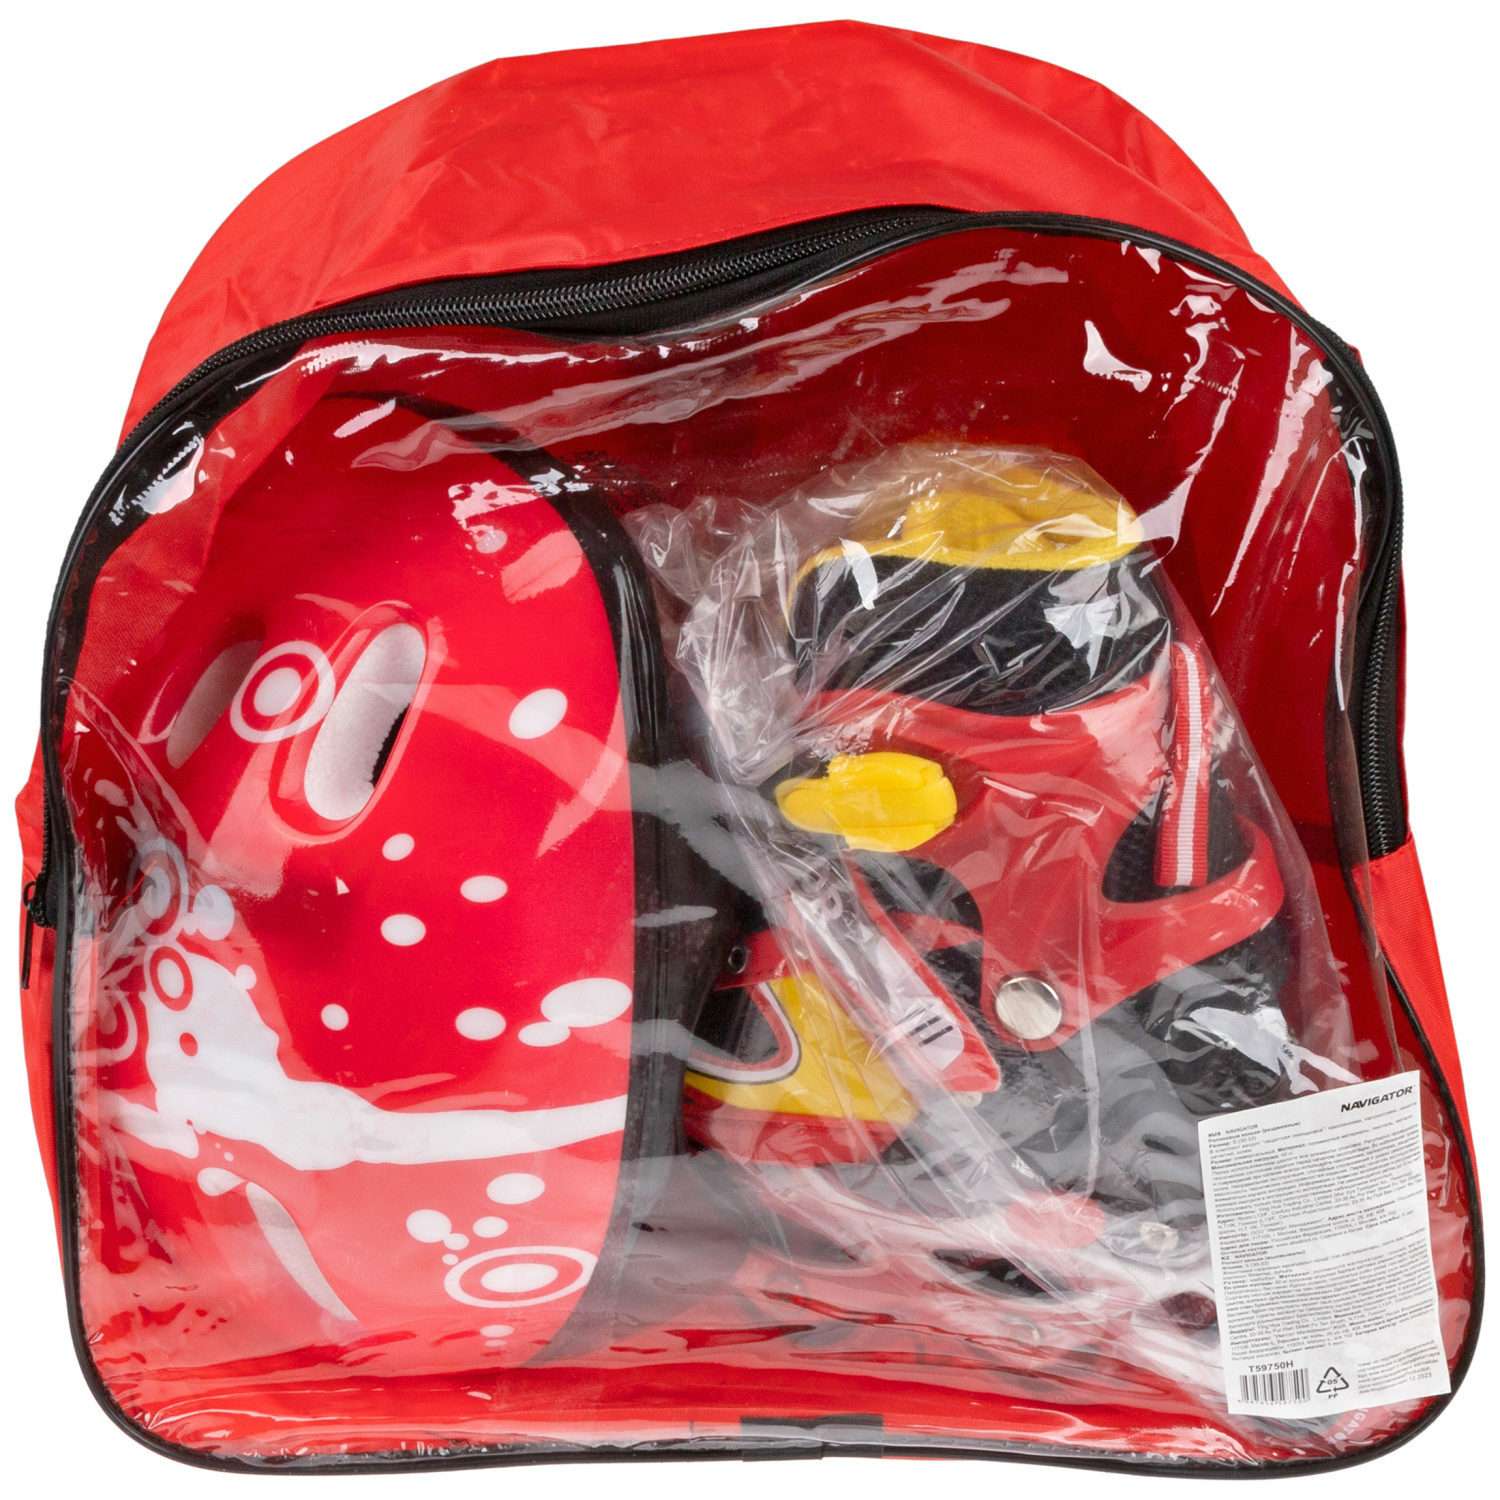 Ролики Navigator детские раздвижные 34 - 37 размер с защитой и шлемом красный - фото 20